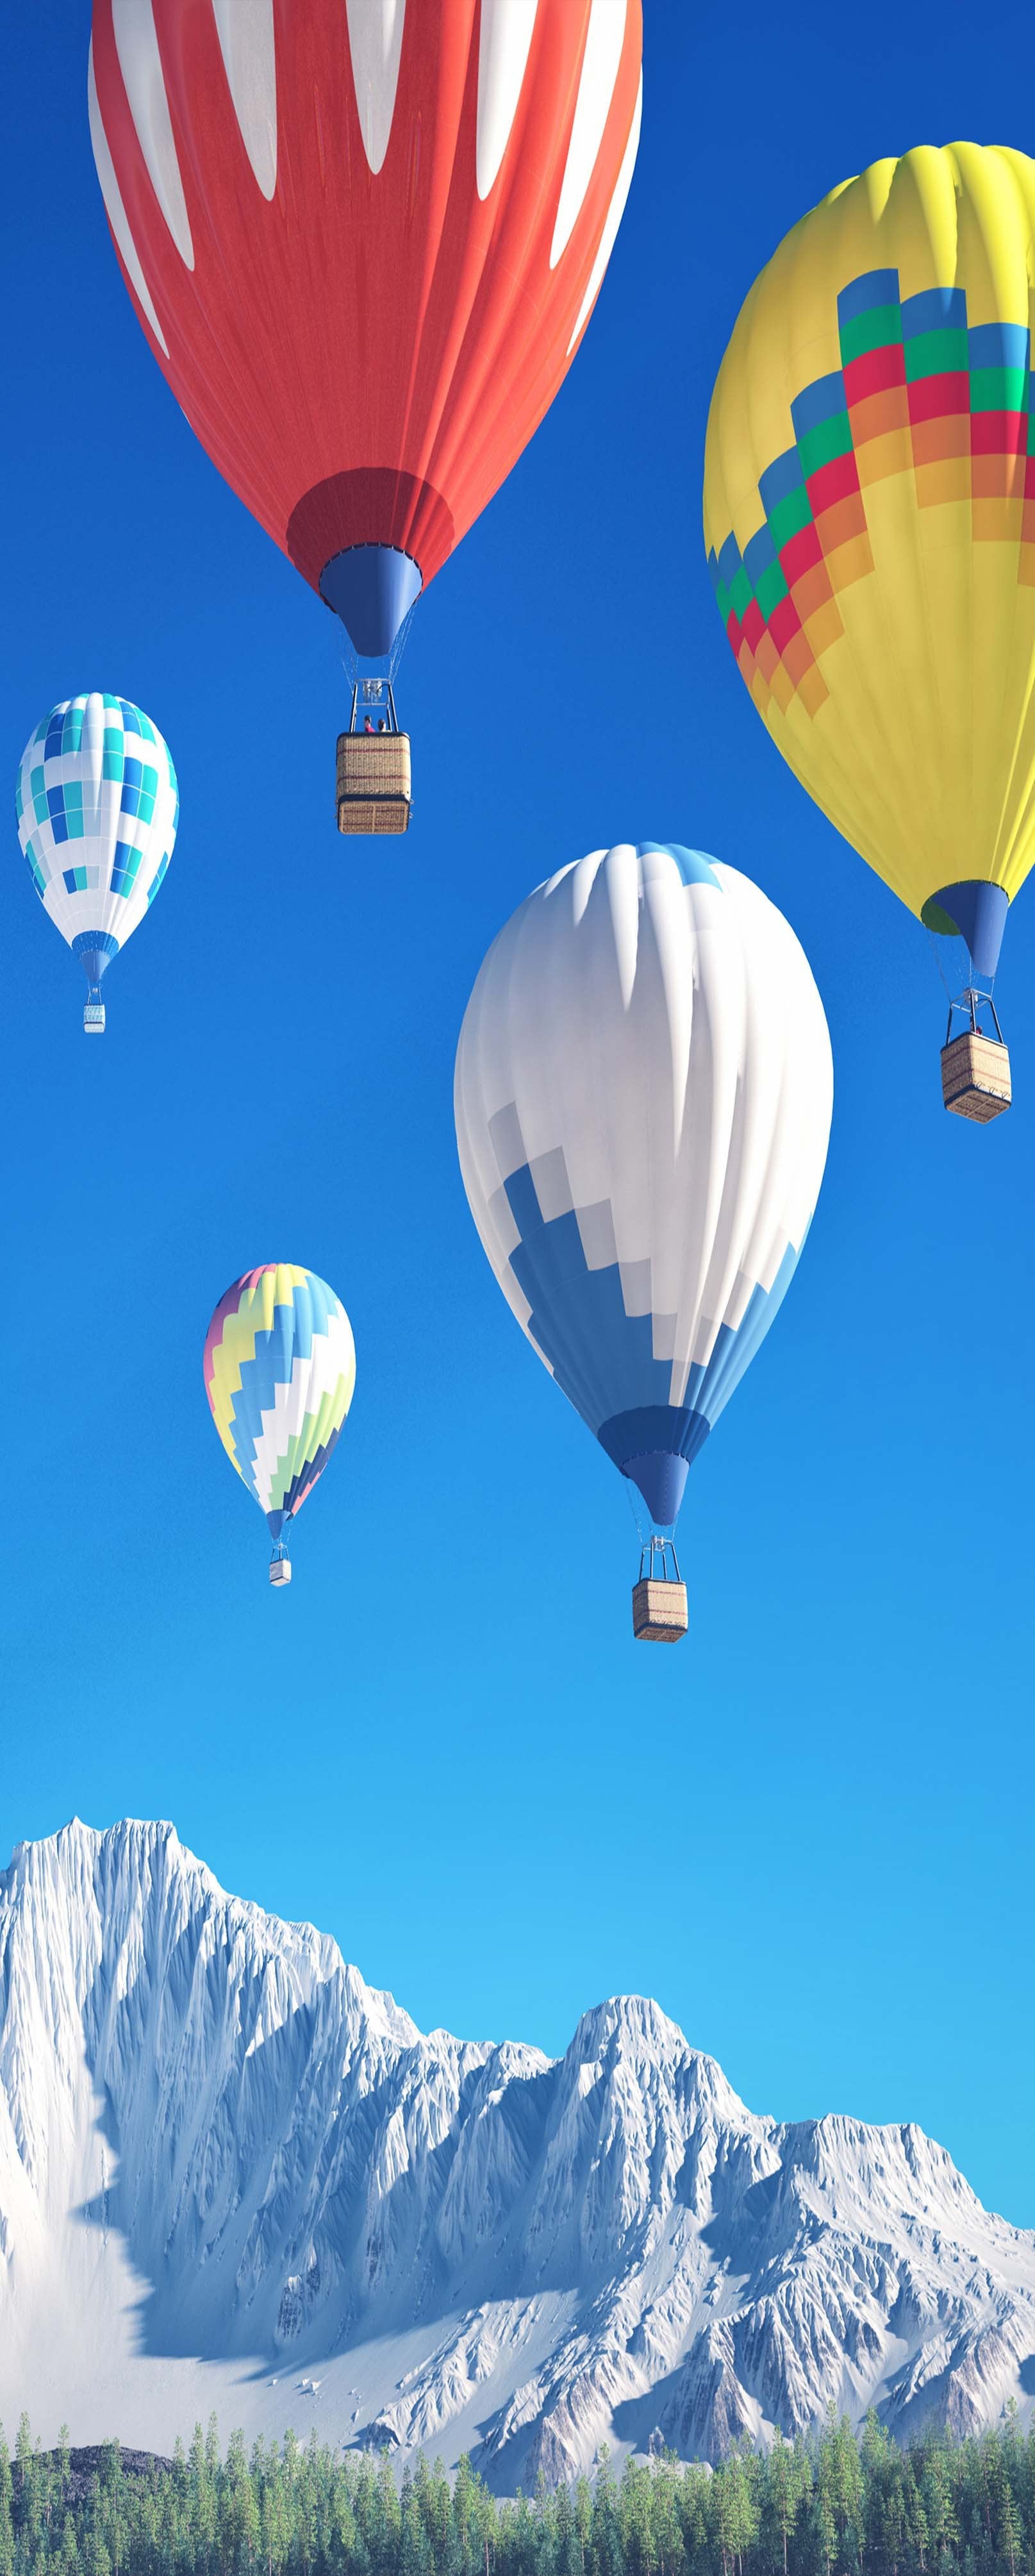 3D Hot Air Balloons 849 Stair Risers Wallpaper AJ Wallpaper 